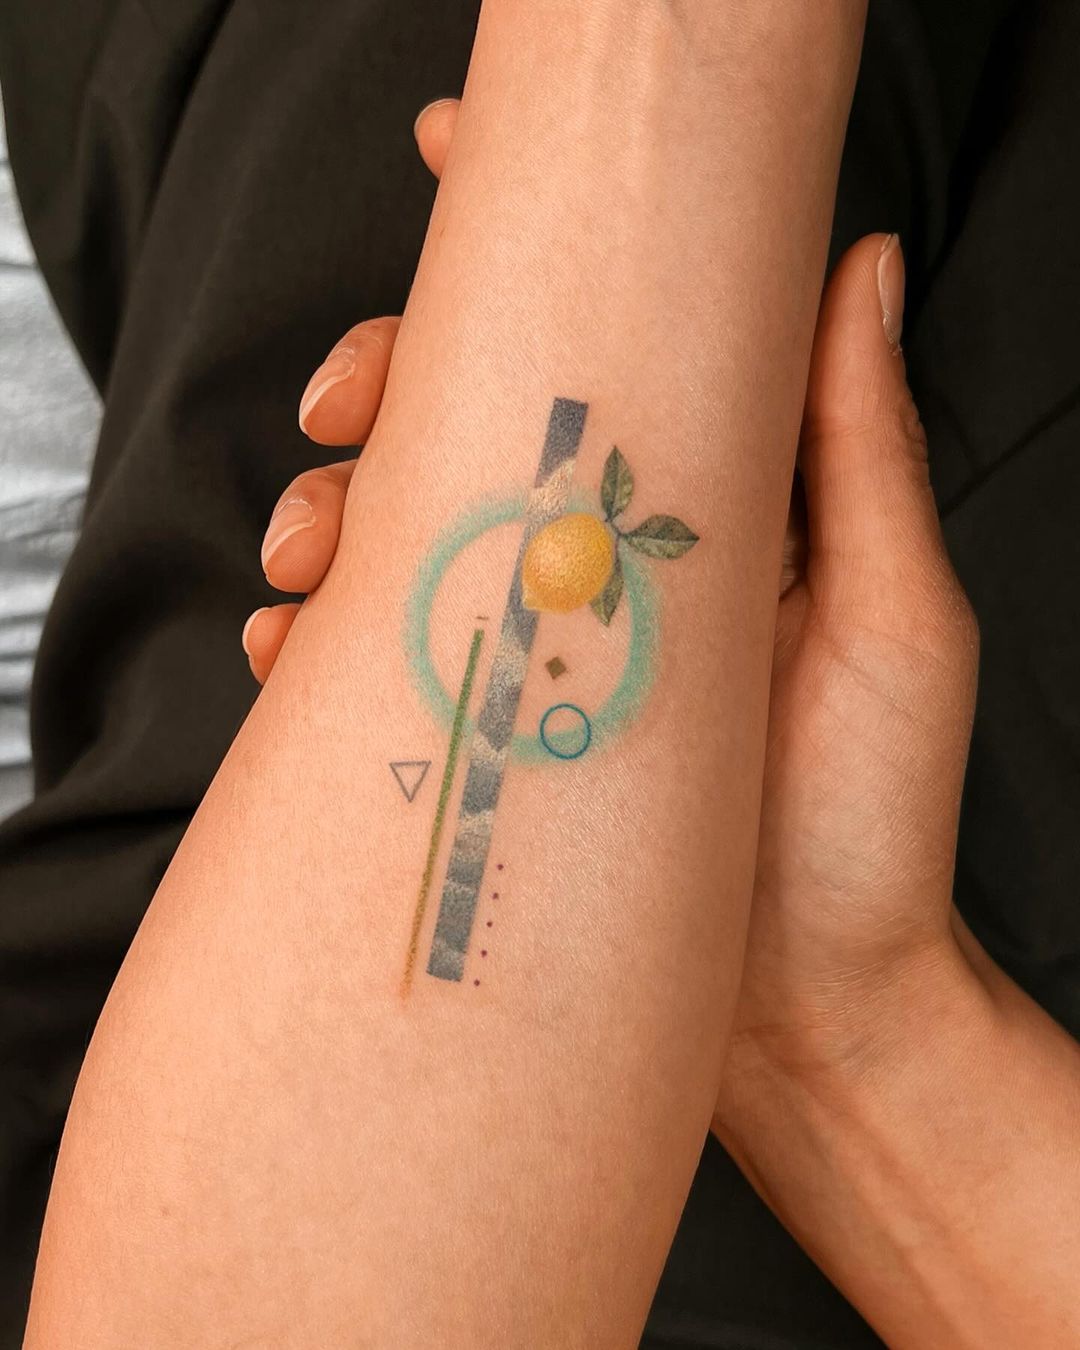 Beautiful geometric tattoos by tattooist basil